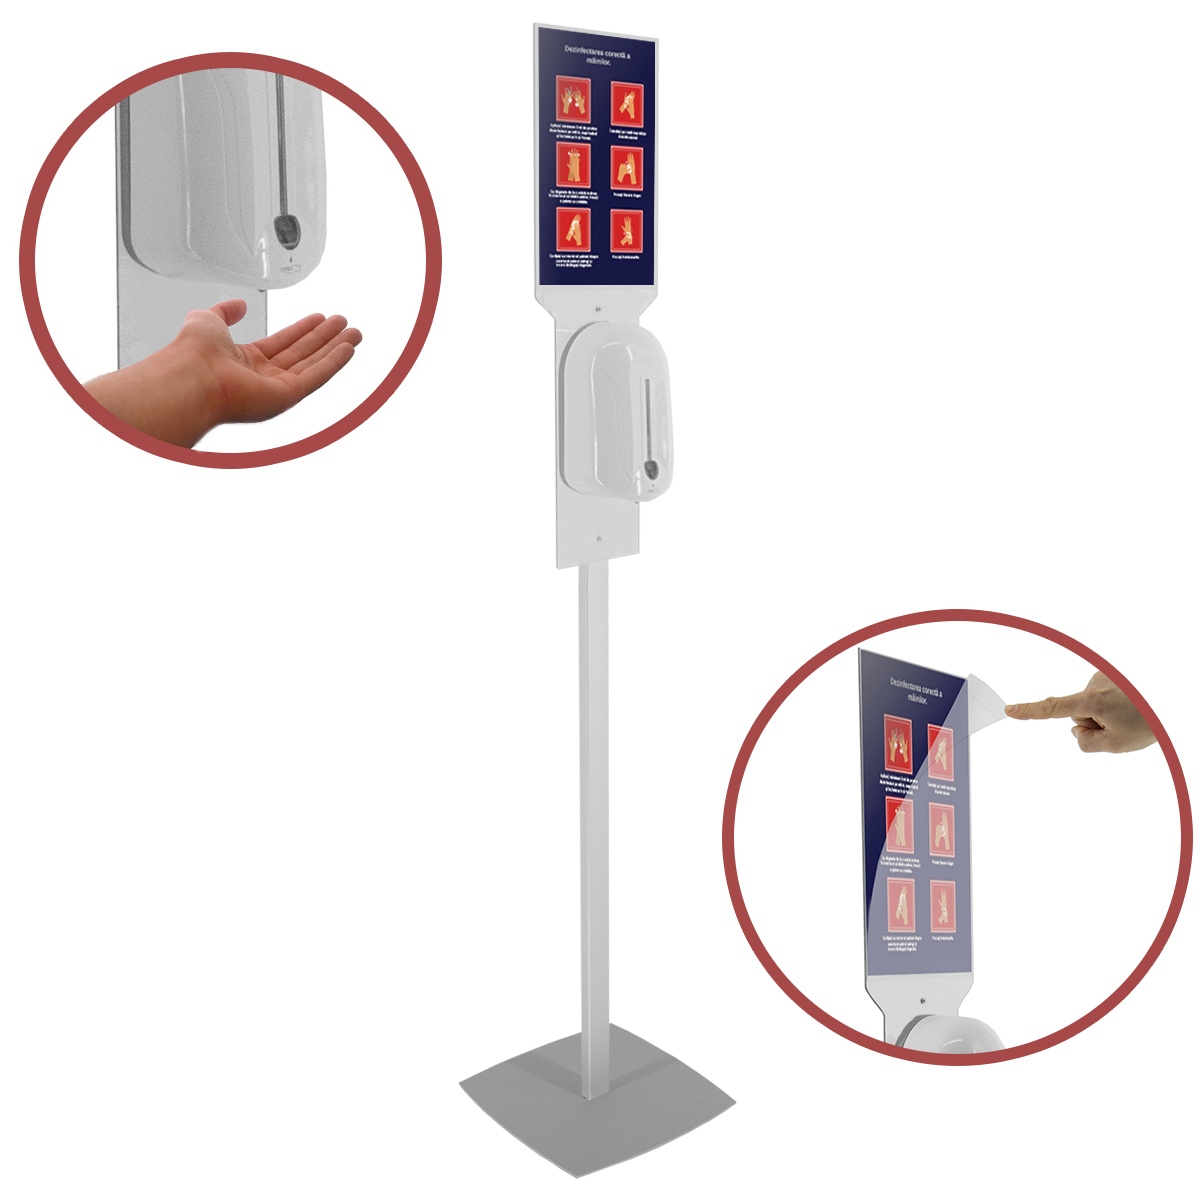 Stativ header cu dimensiunea A4 portrait și dozator automat pentru dezinfectare mâini, JJ DISPLAYS, dimensiuni la cerere